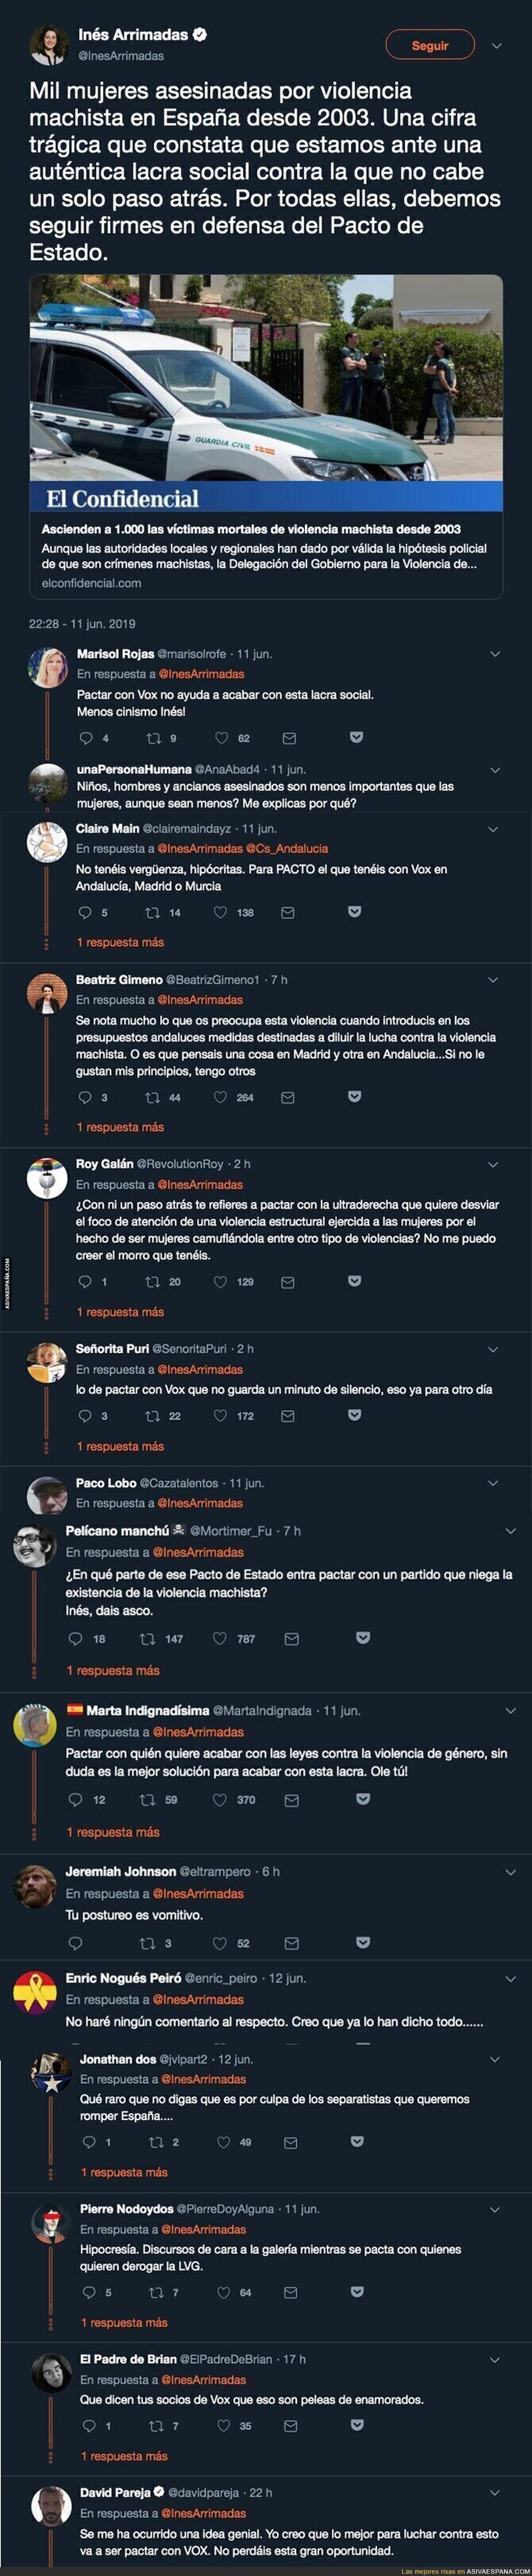 Inés Arrimadas muestra su hipocresía más asquerosa con este tuit sobre violencia machista